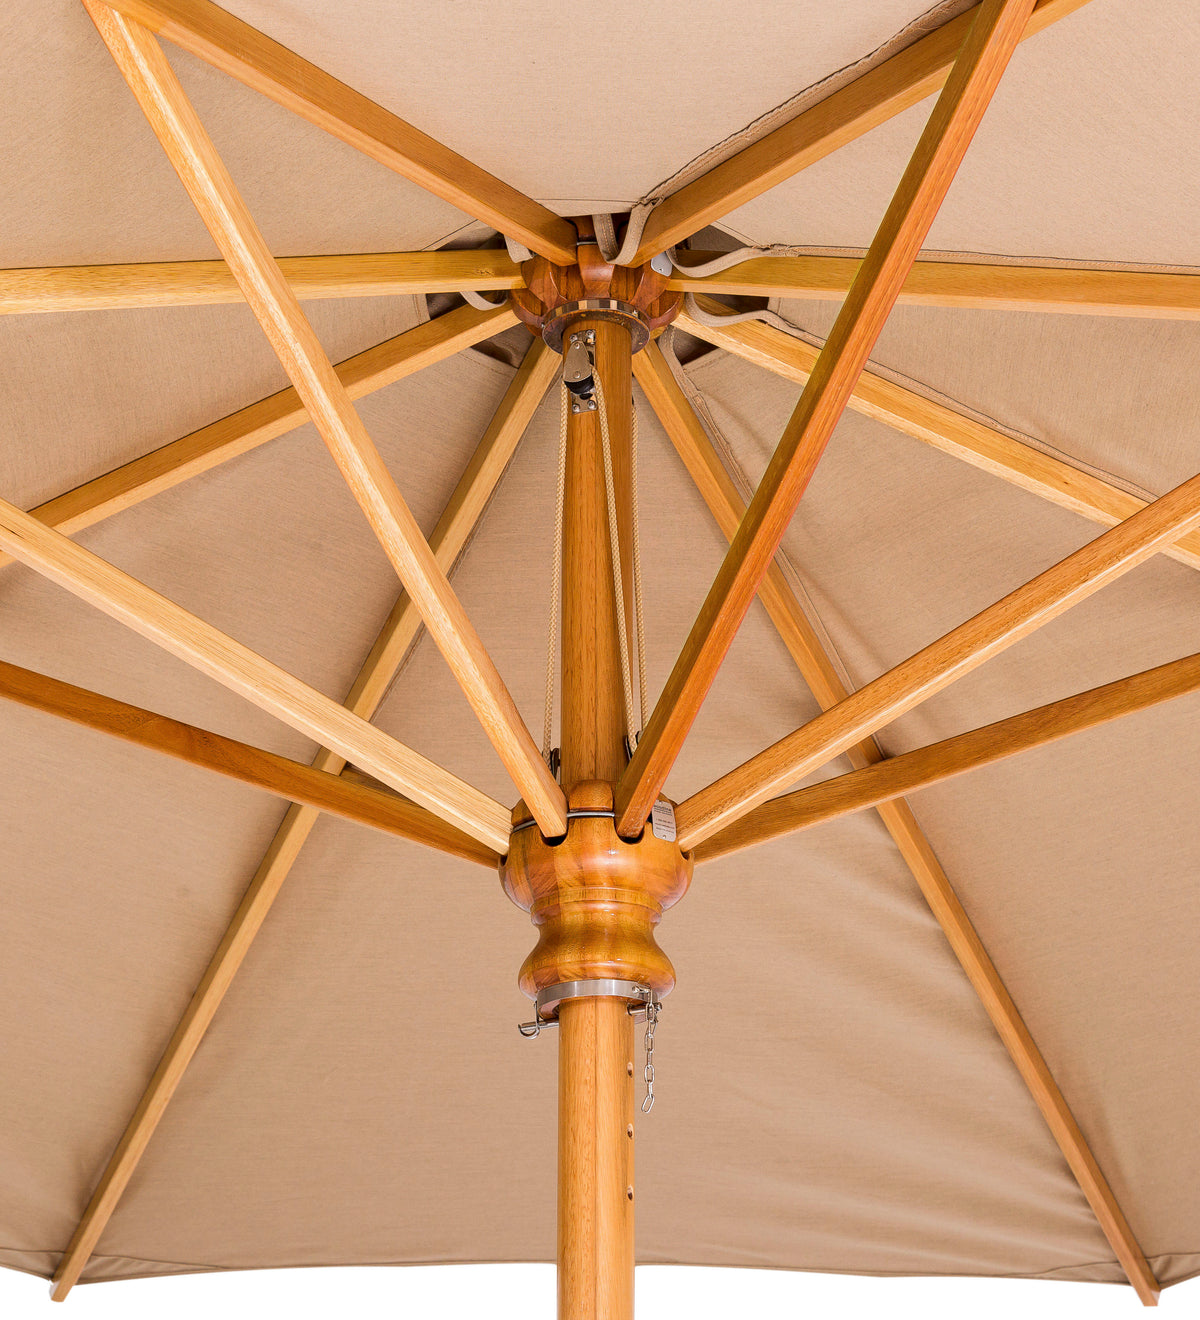 Woodline 7&#39; Safari Square Center Post Umbrella